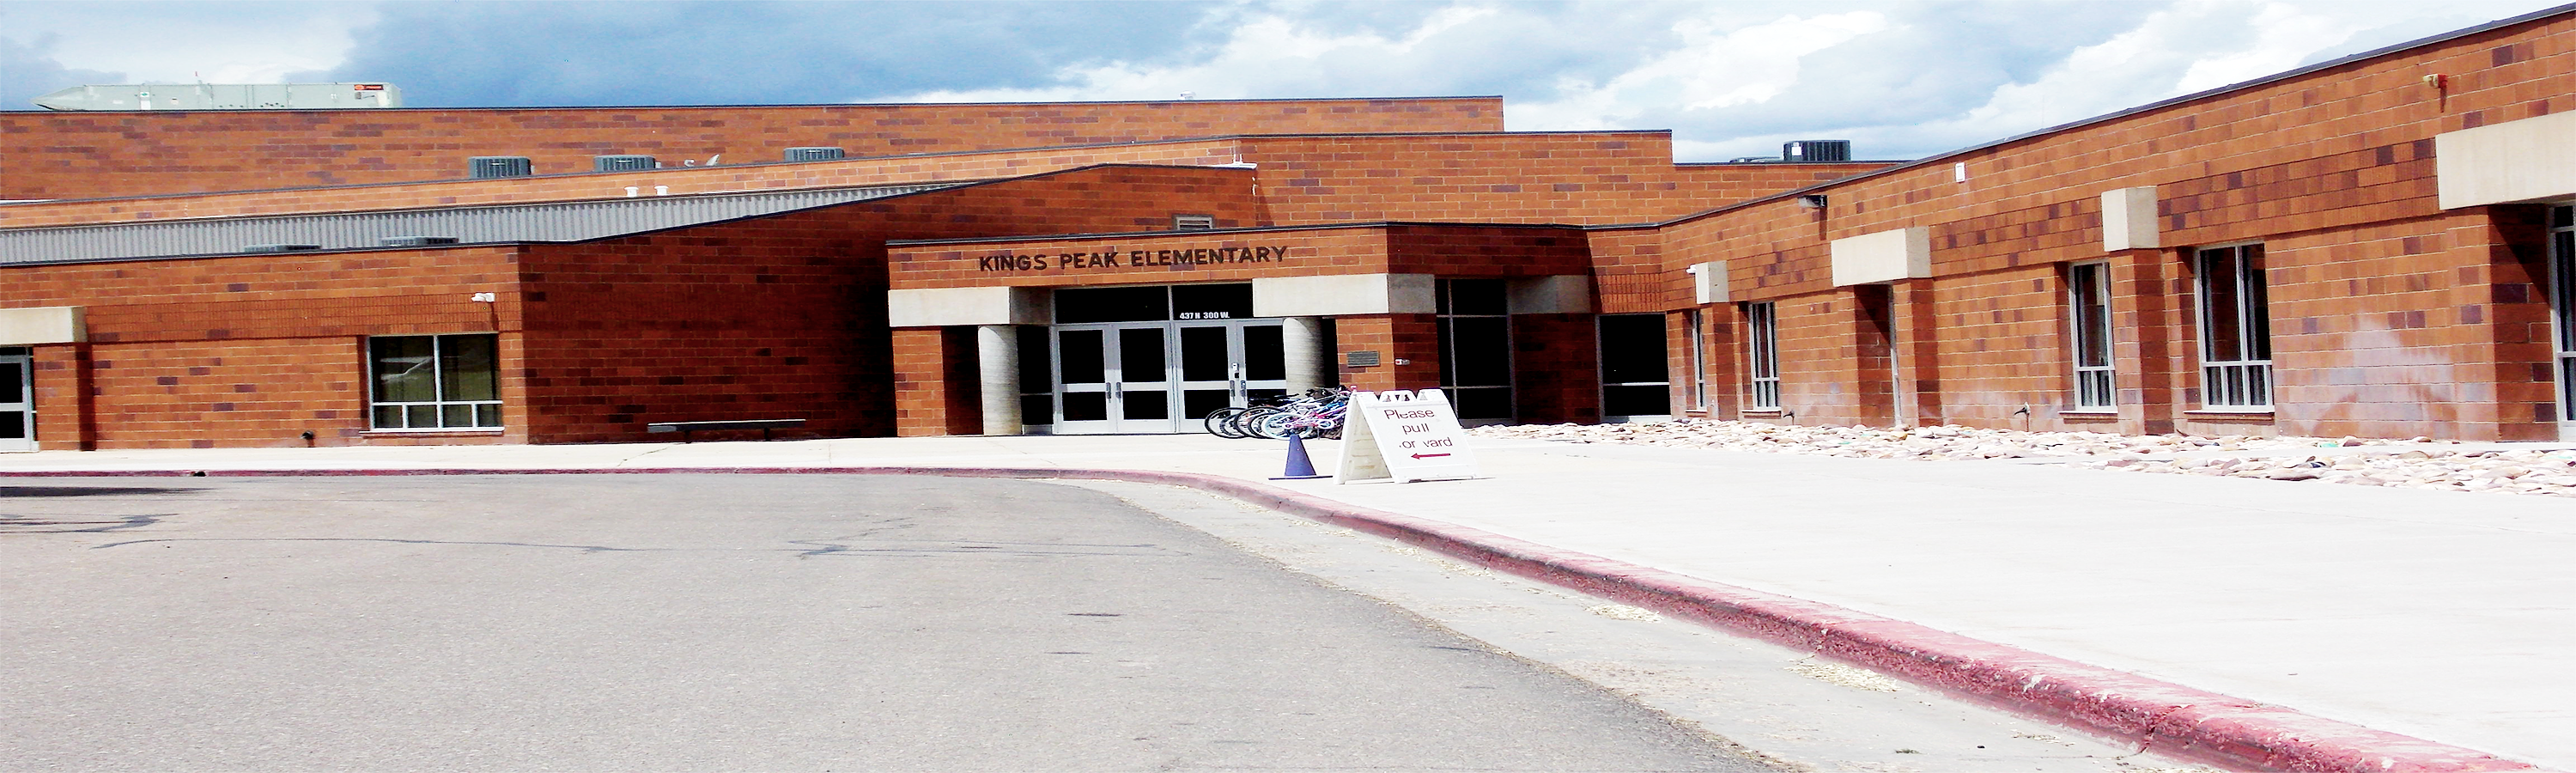 Kings Peak Elementary School